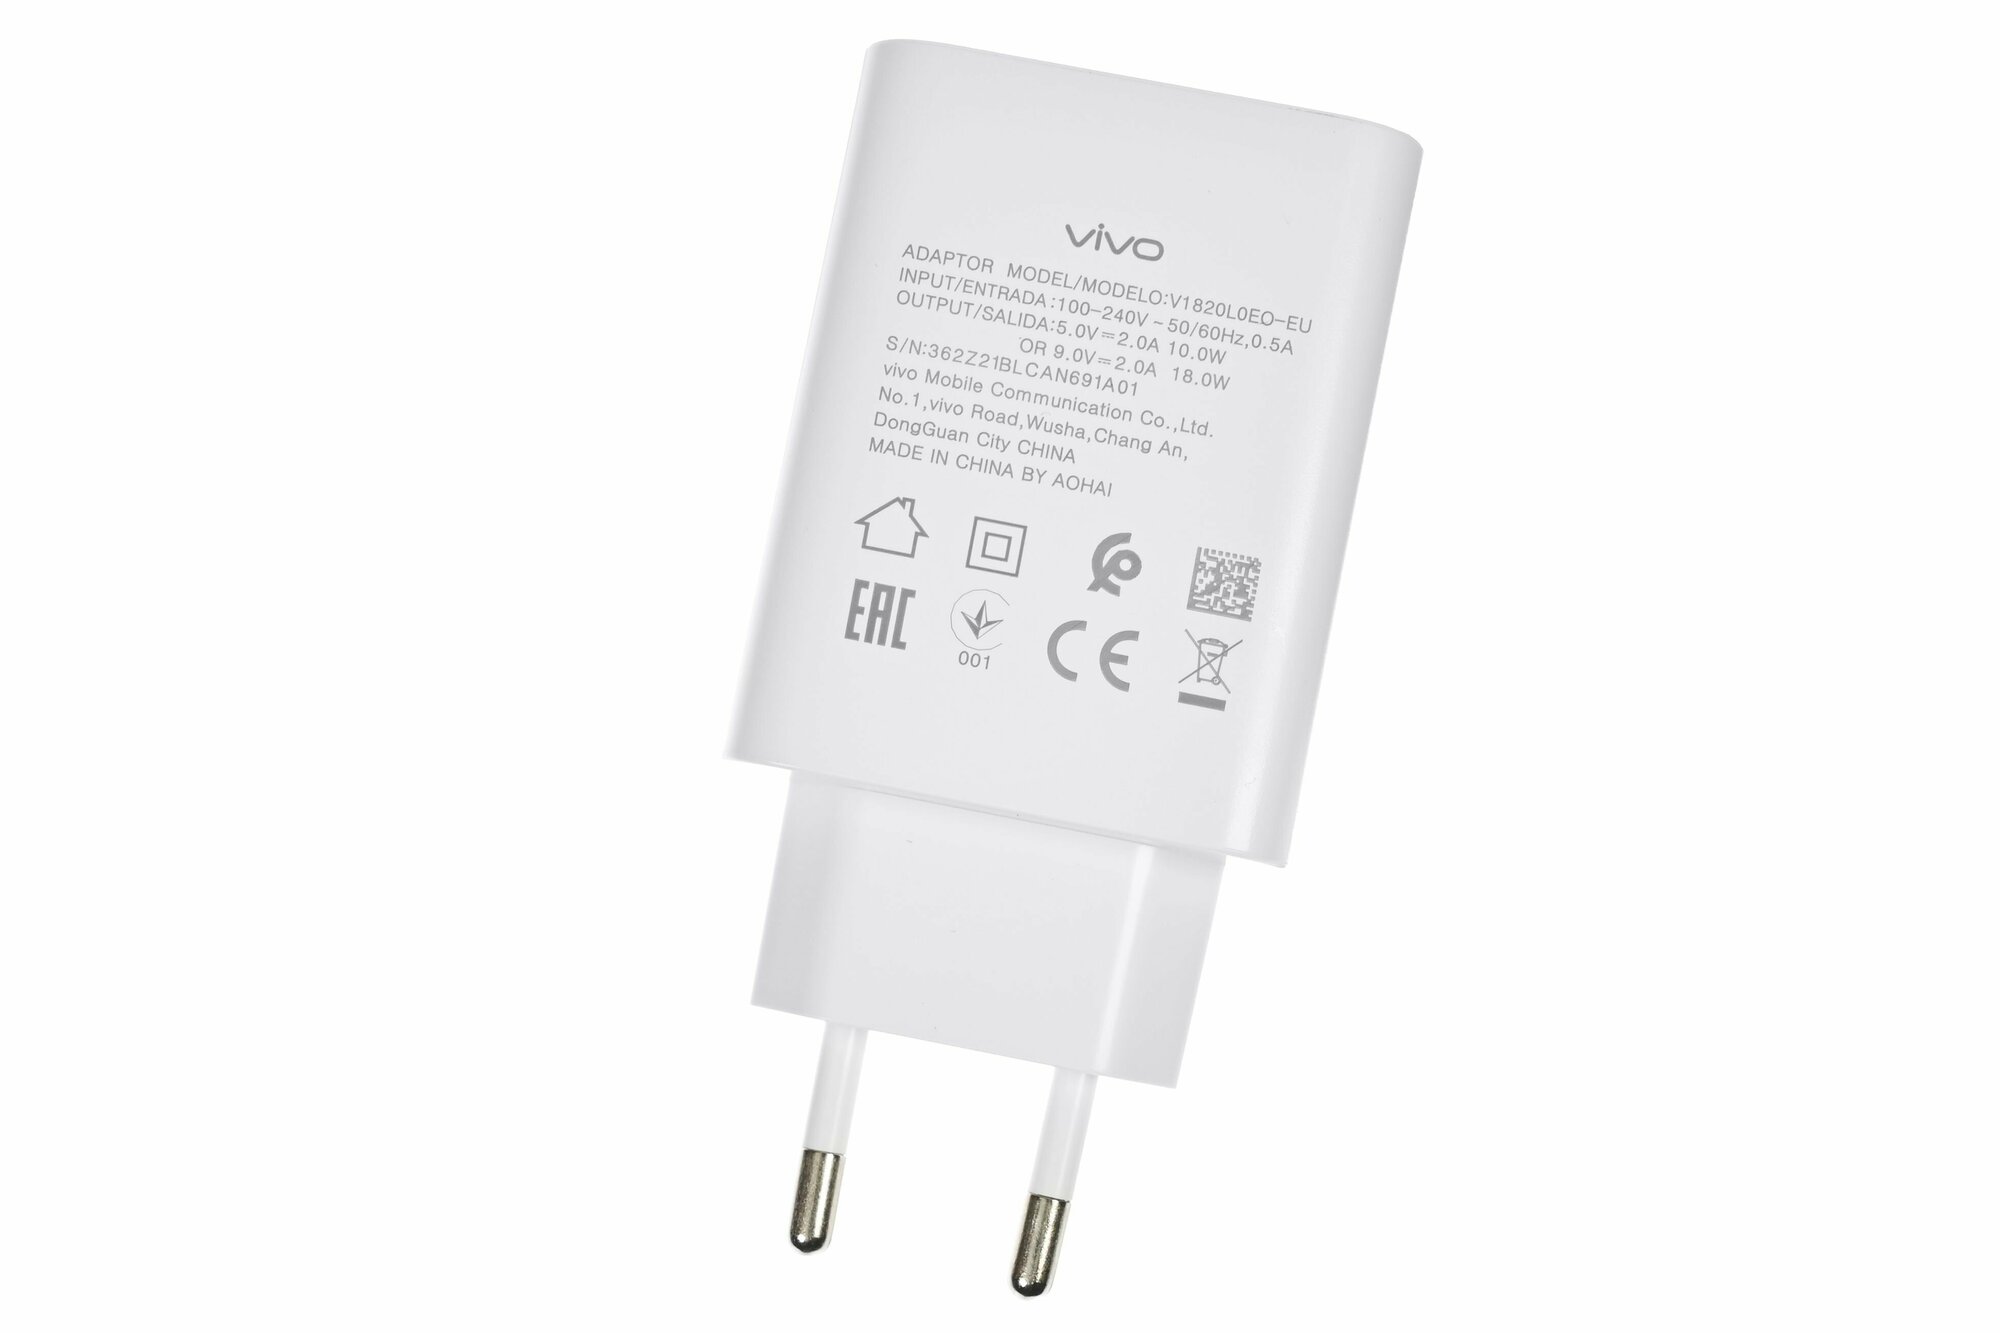 Сетевое зарядное устройство V1820L0E0-EU для VIVO с USB входом Max 18W (цвет: White)